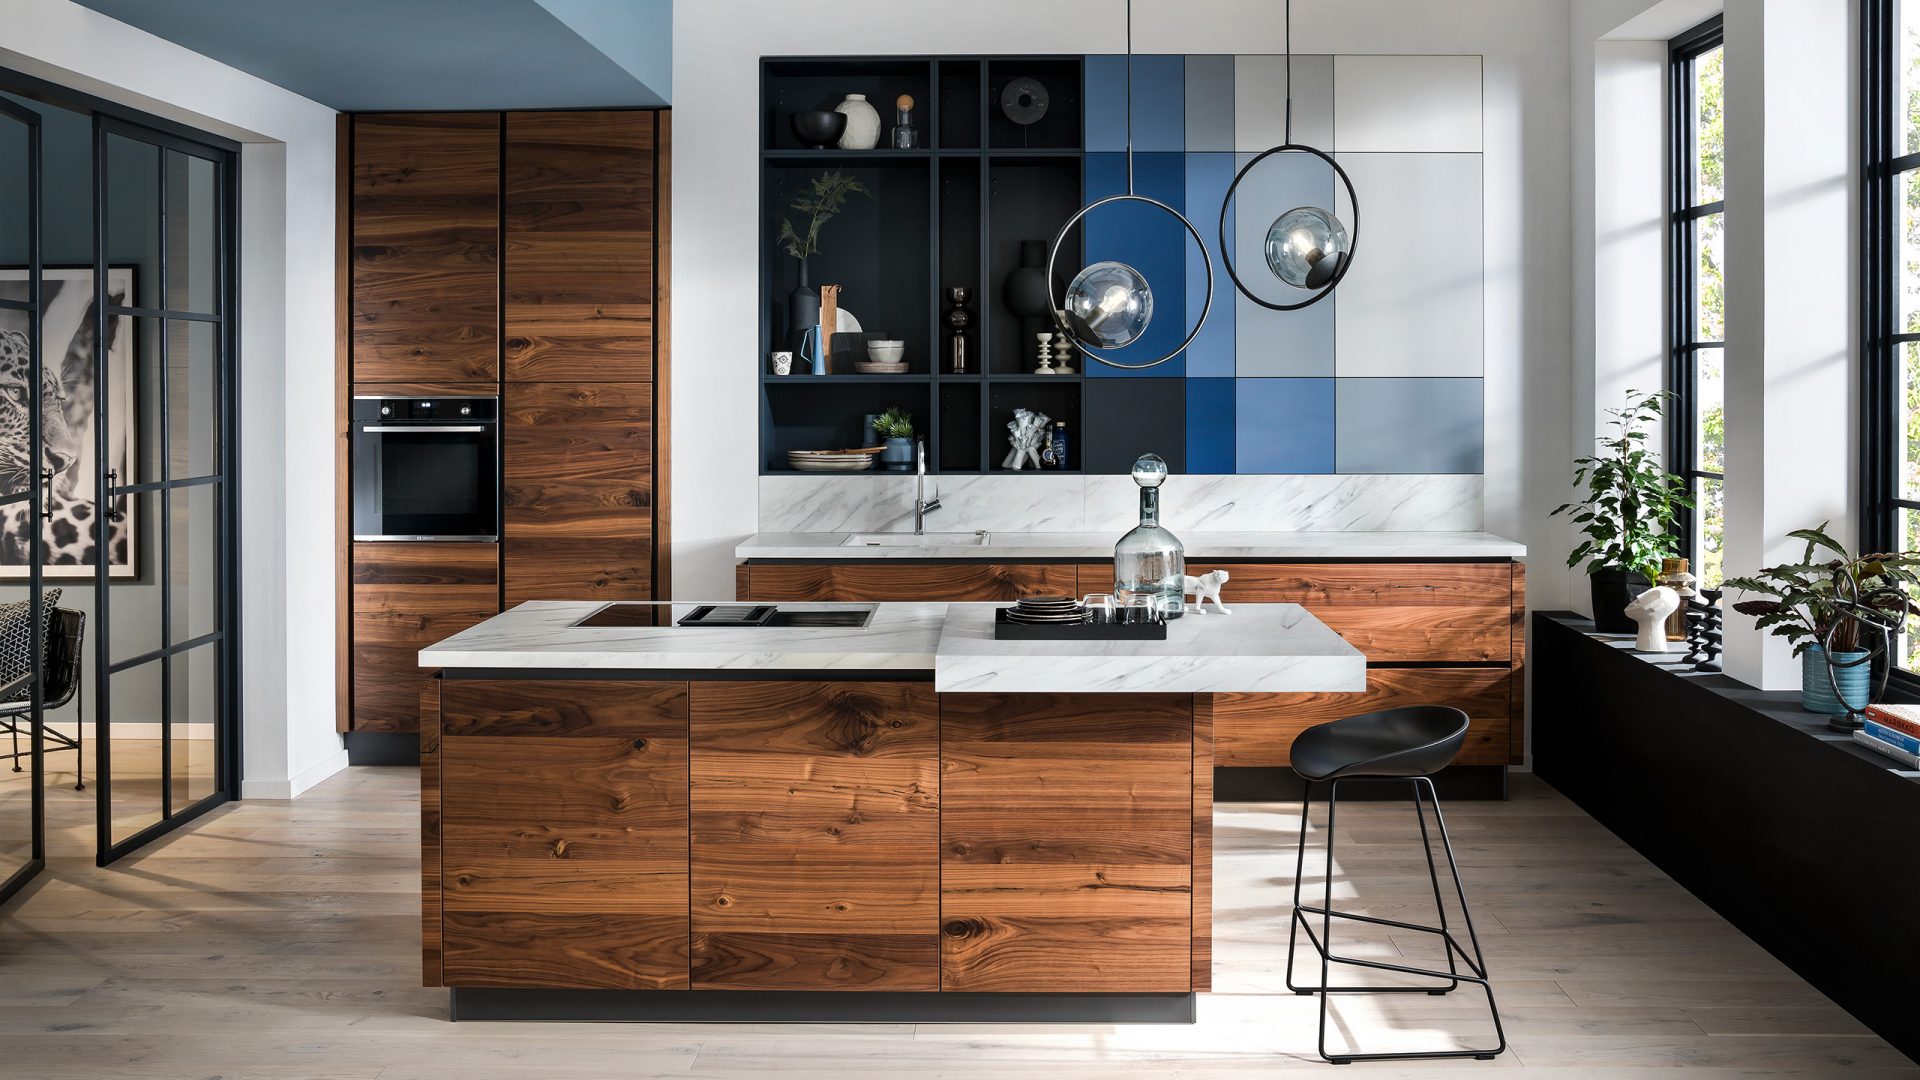 Nussbaum Häcker Küche mit blauen Farbaktzenten - Küchentrends 2021